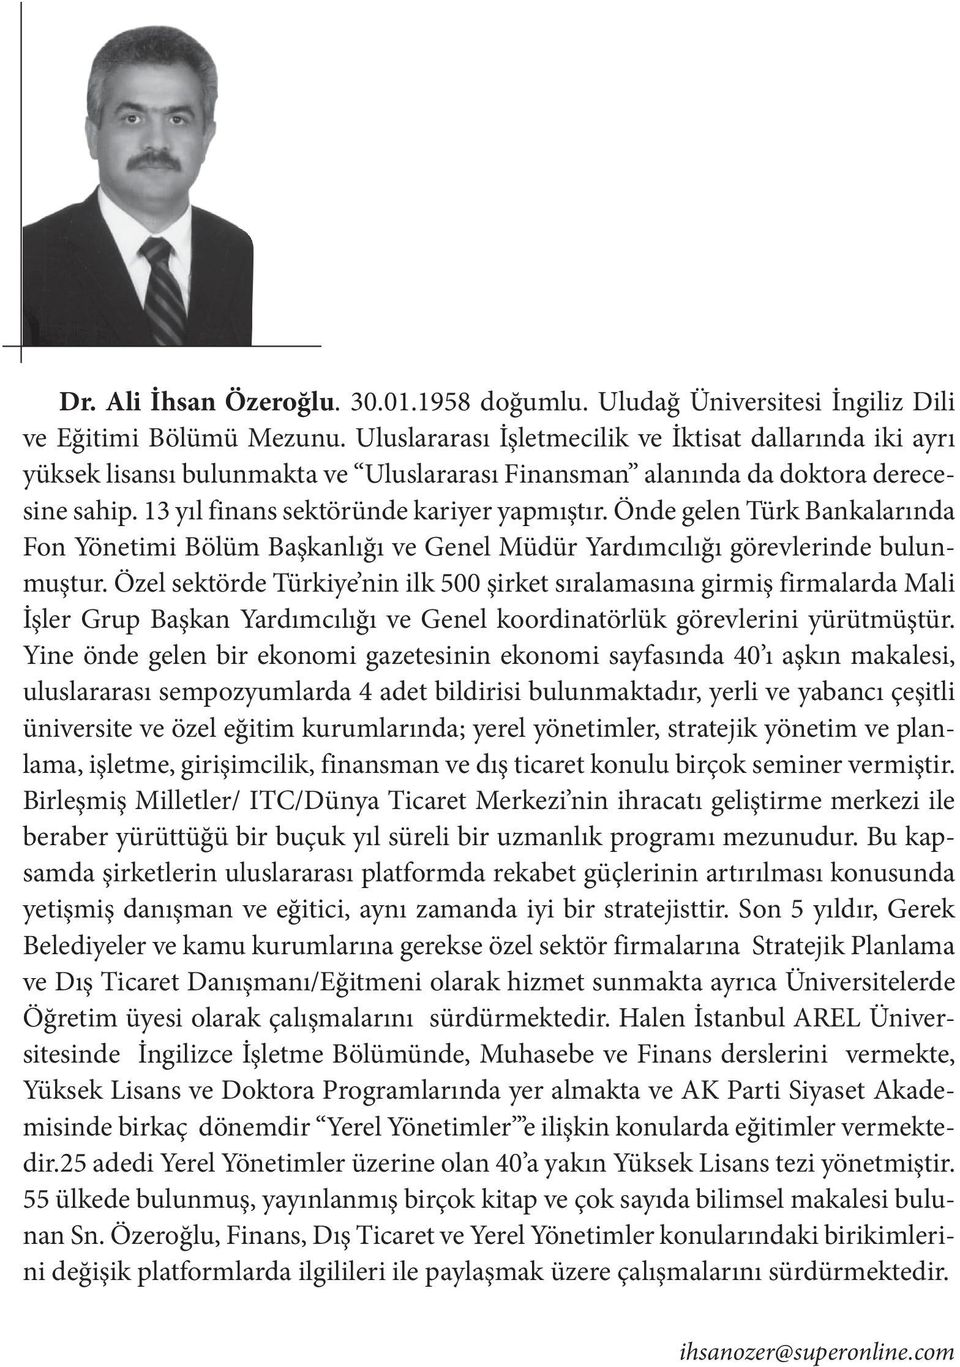 Önde gelen Türk Bankalarında Fon Yönetimi Bölüm Başkanlığı ve Genel Müdür Yardımcılığı görevlerinde bulunmuştur.